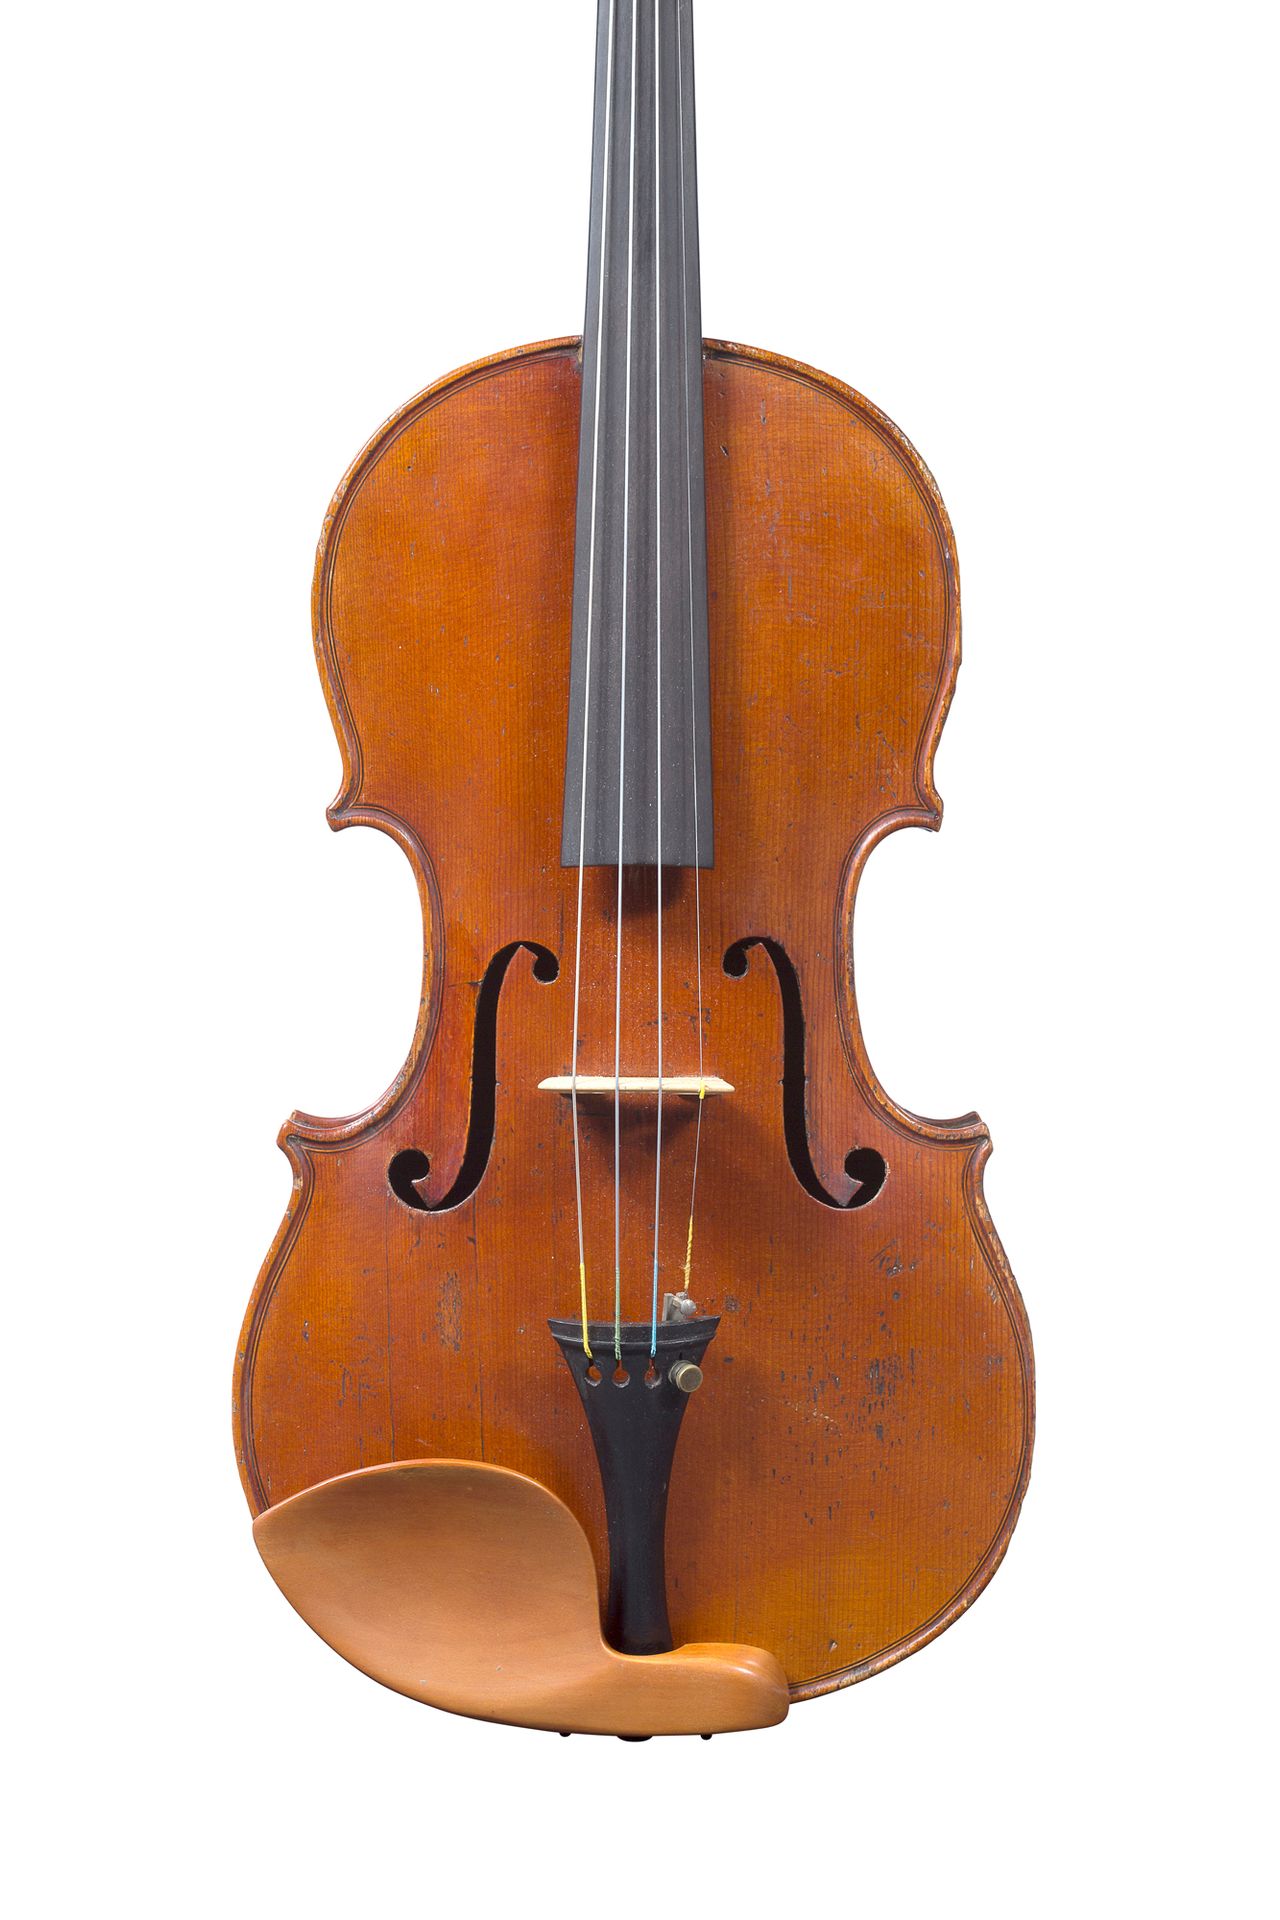 Null 多米尼克-迪特洛的小提琴
约1830-40年在米勒库尔制造
桌子上有修复的痕迹 
背面367毫米